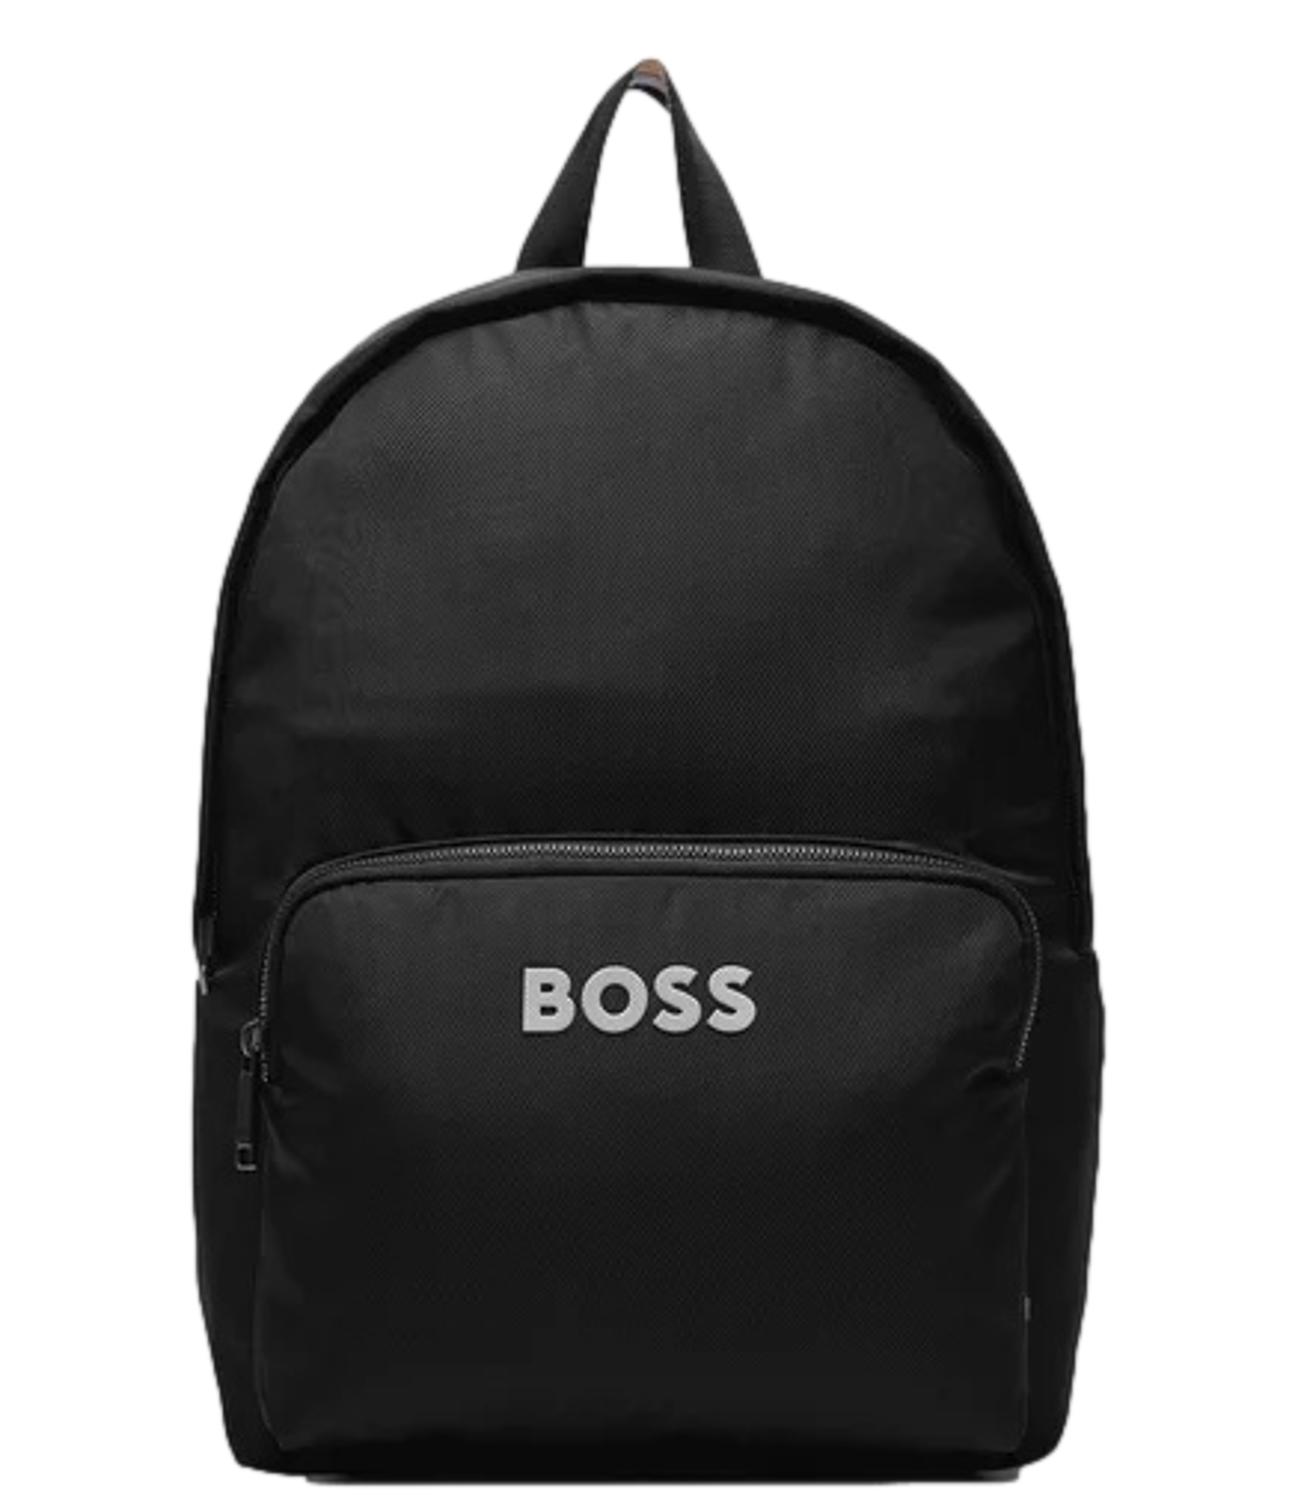 Zaino Boss nero uomo Backpack